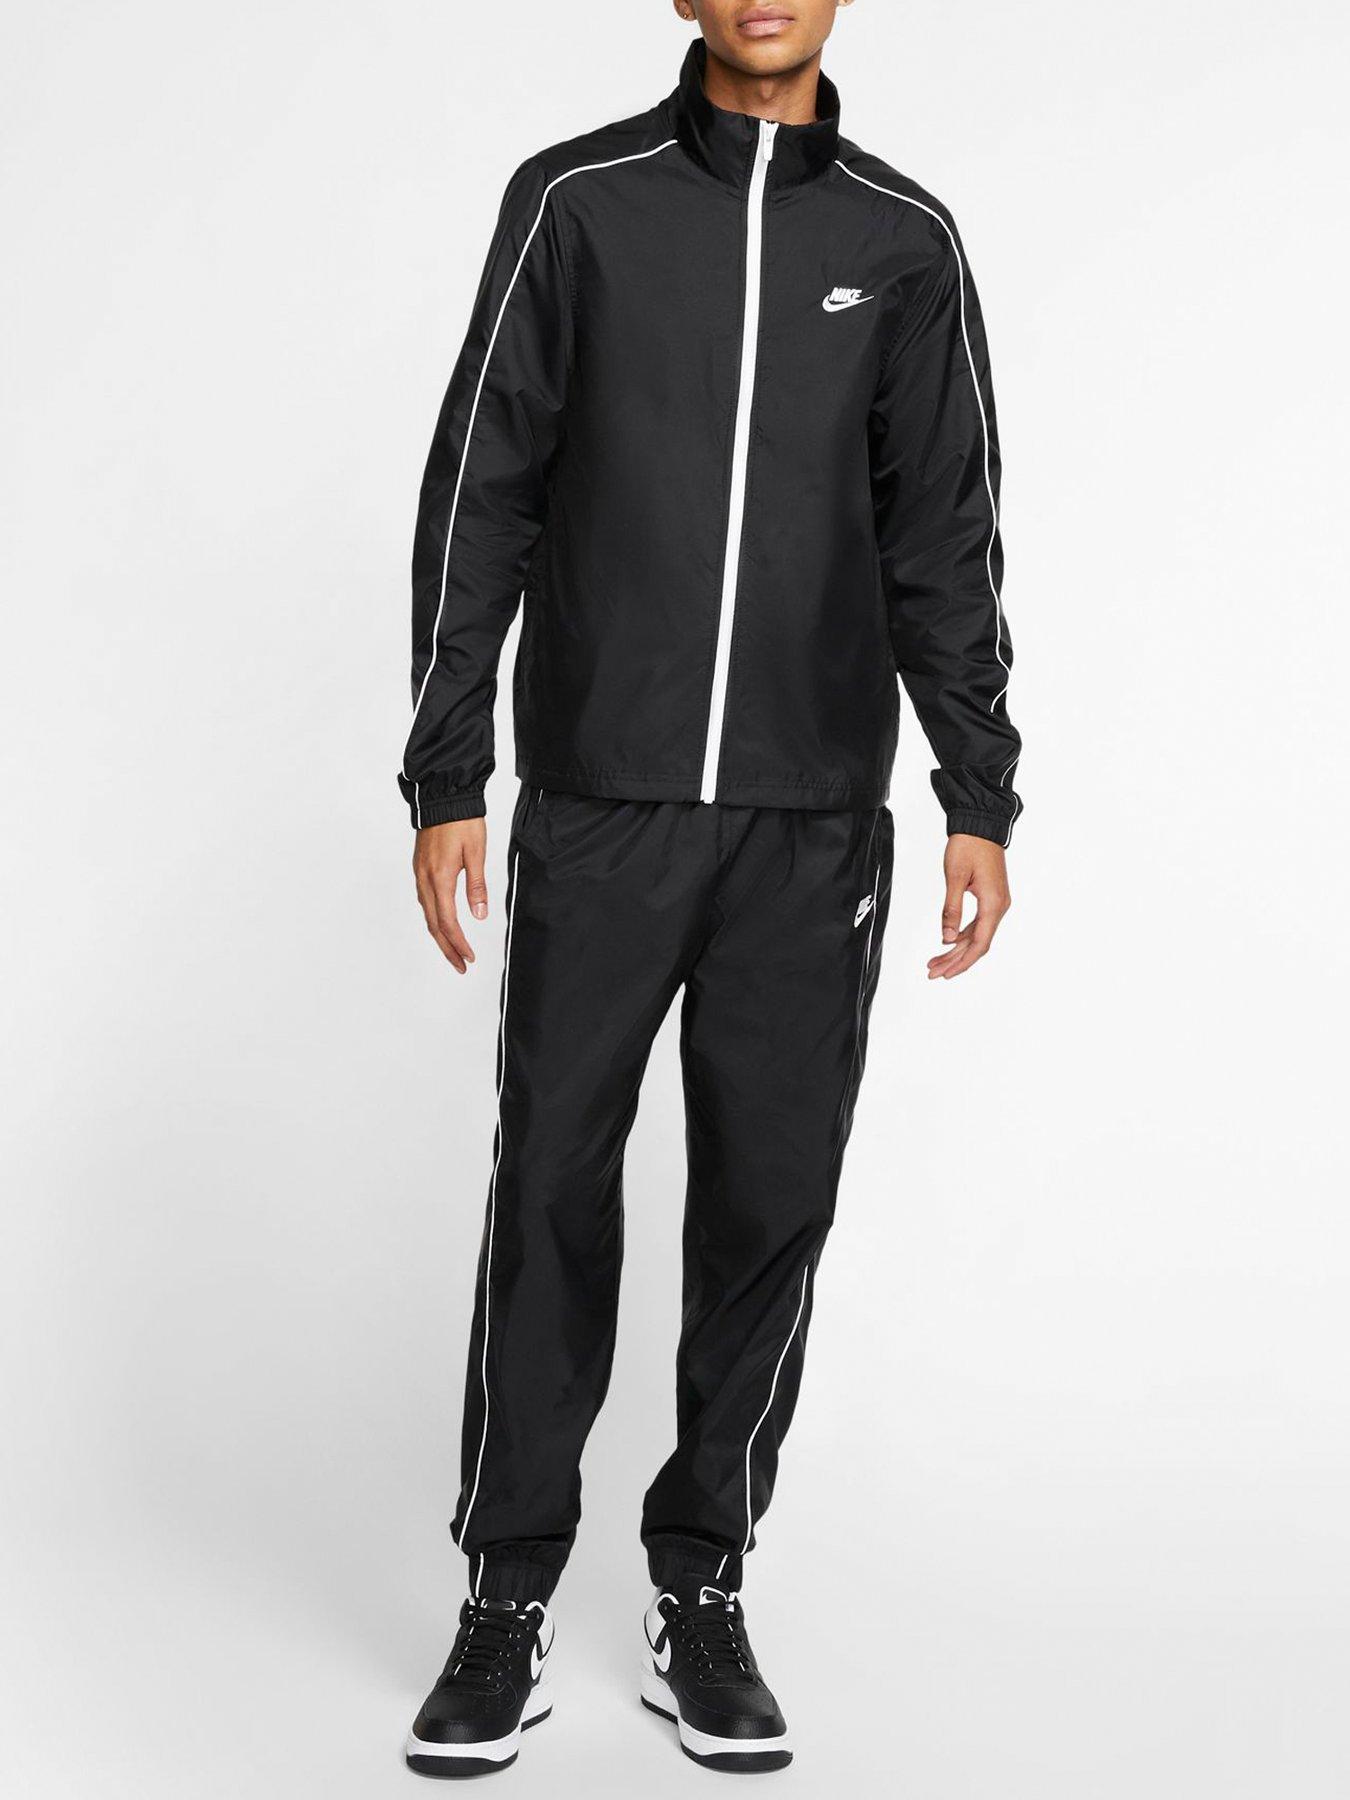 Nike Woven Tracksuit - Black/White 